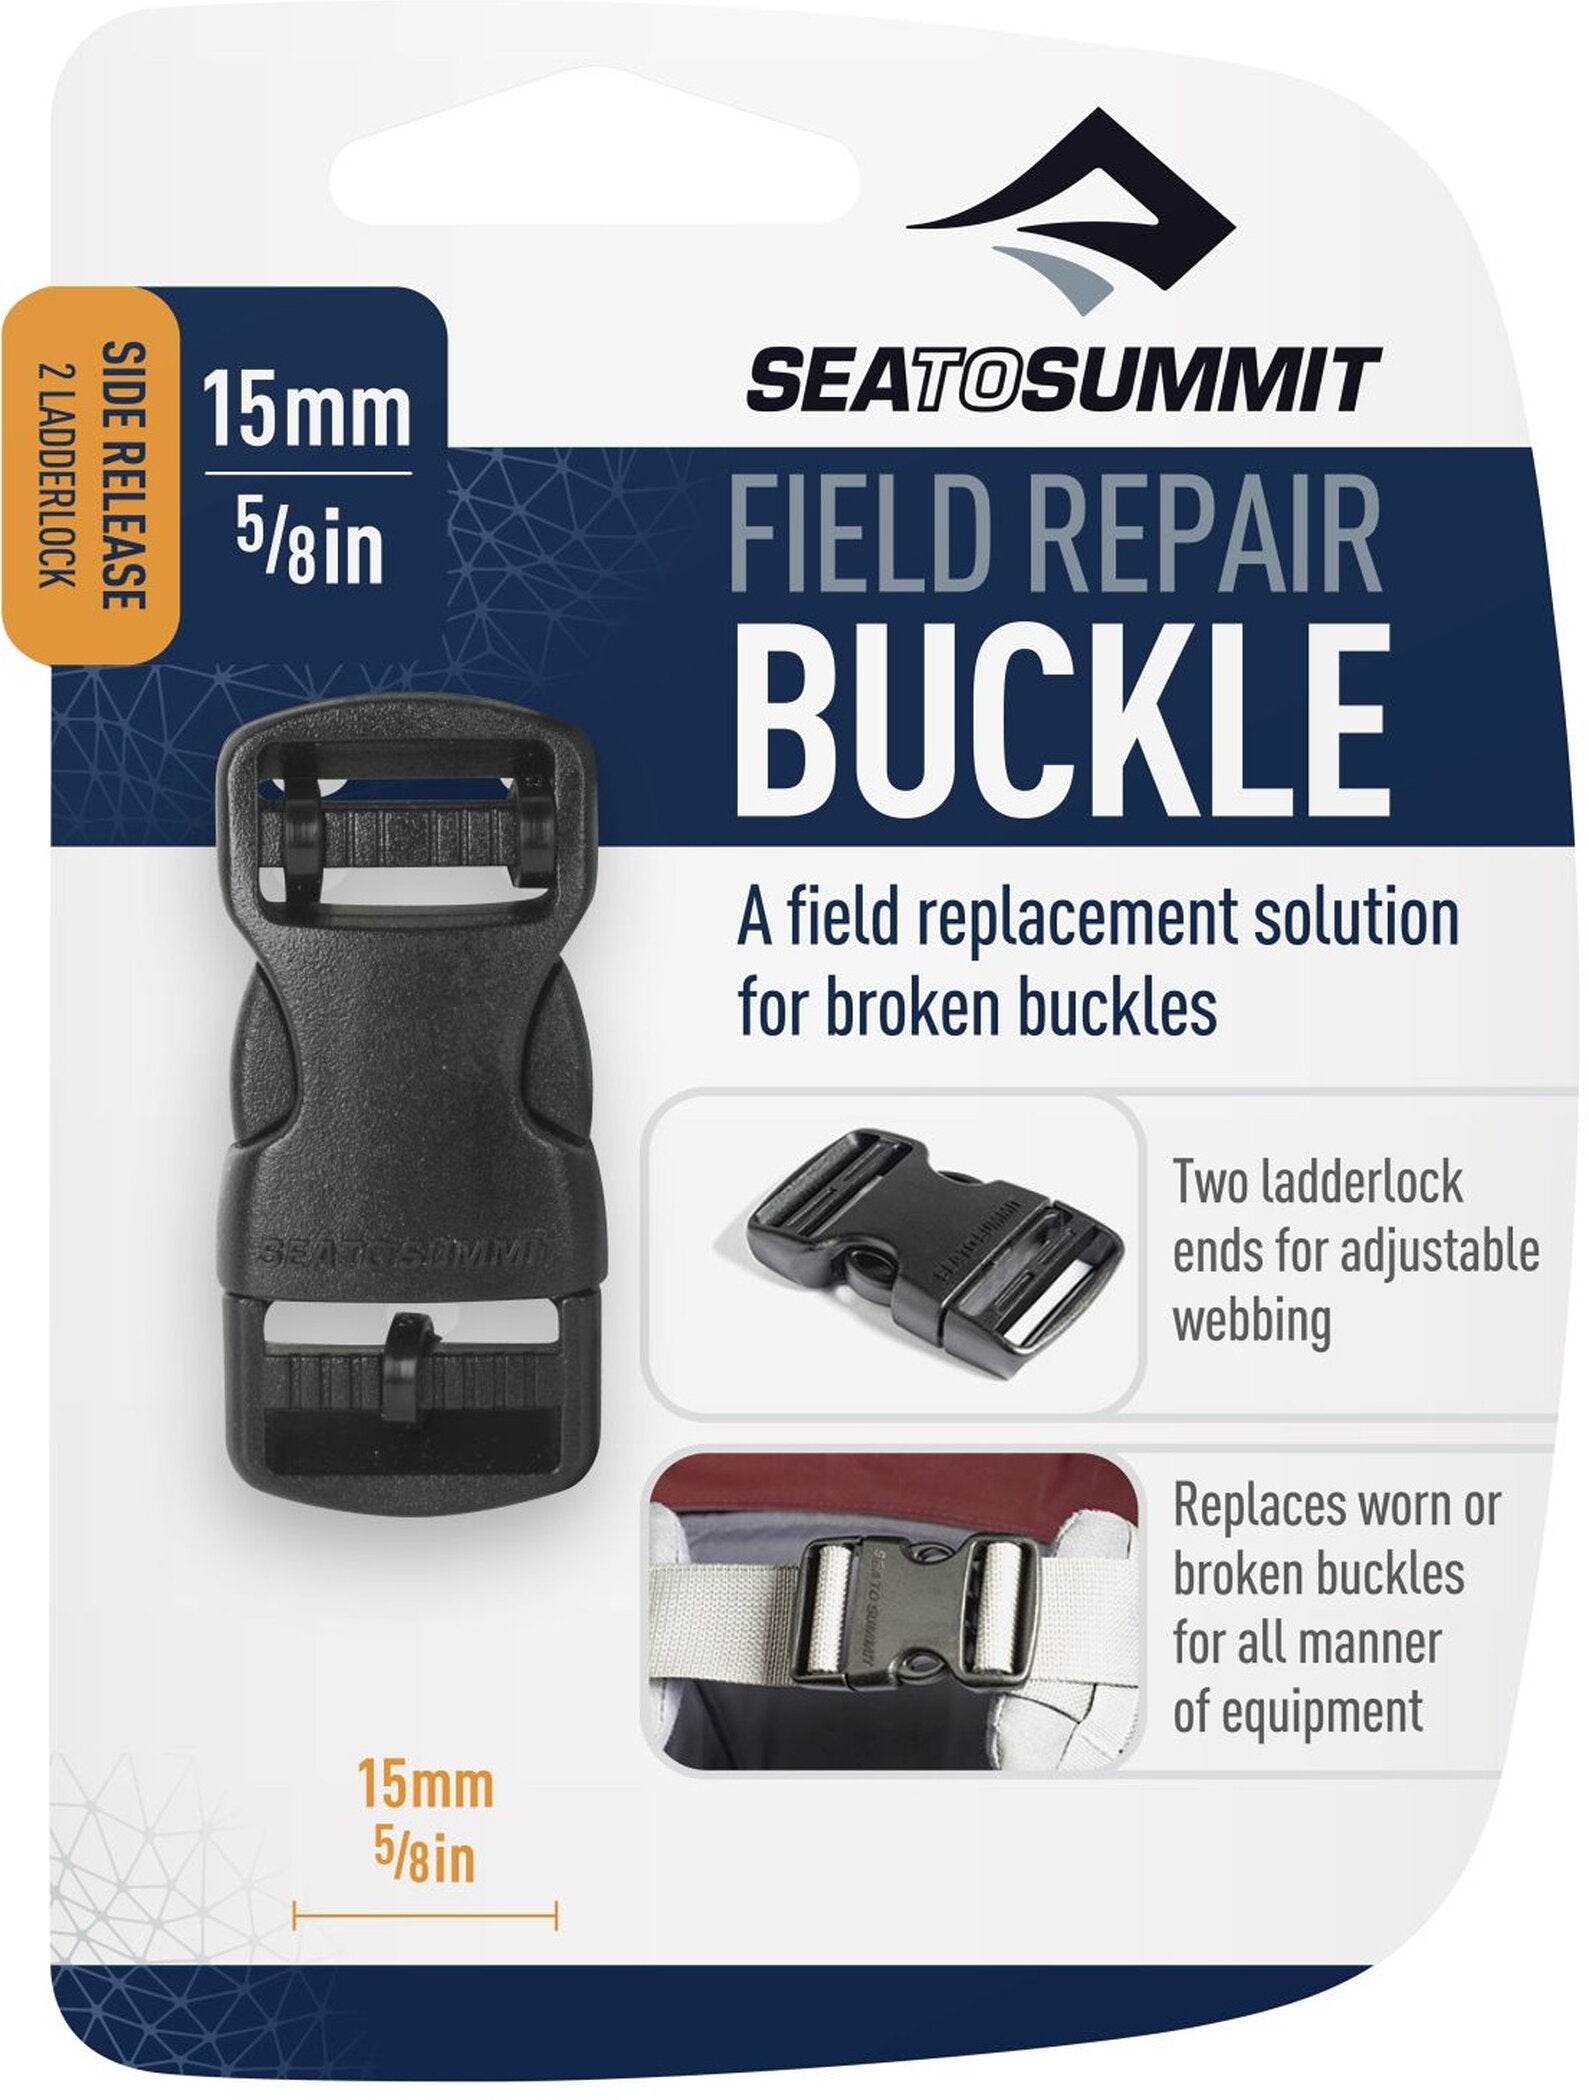 Rucksack Field Repair Buckle - 15mm Side Release